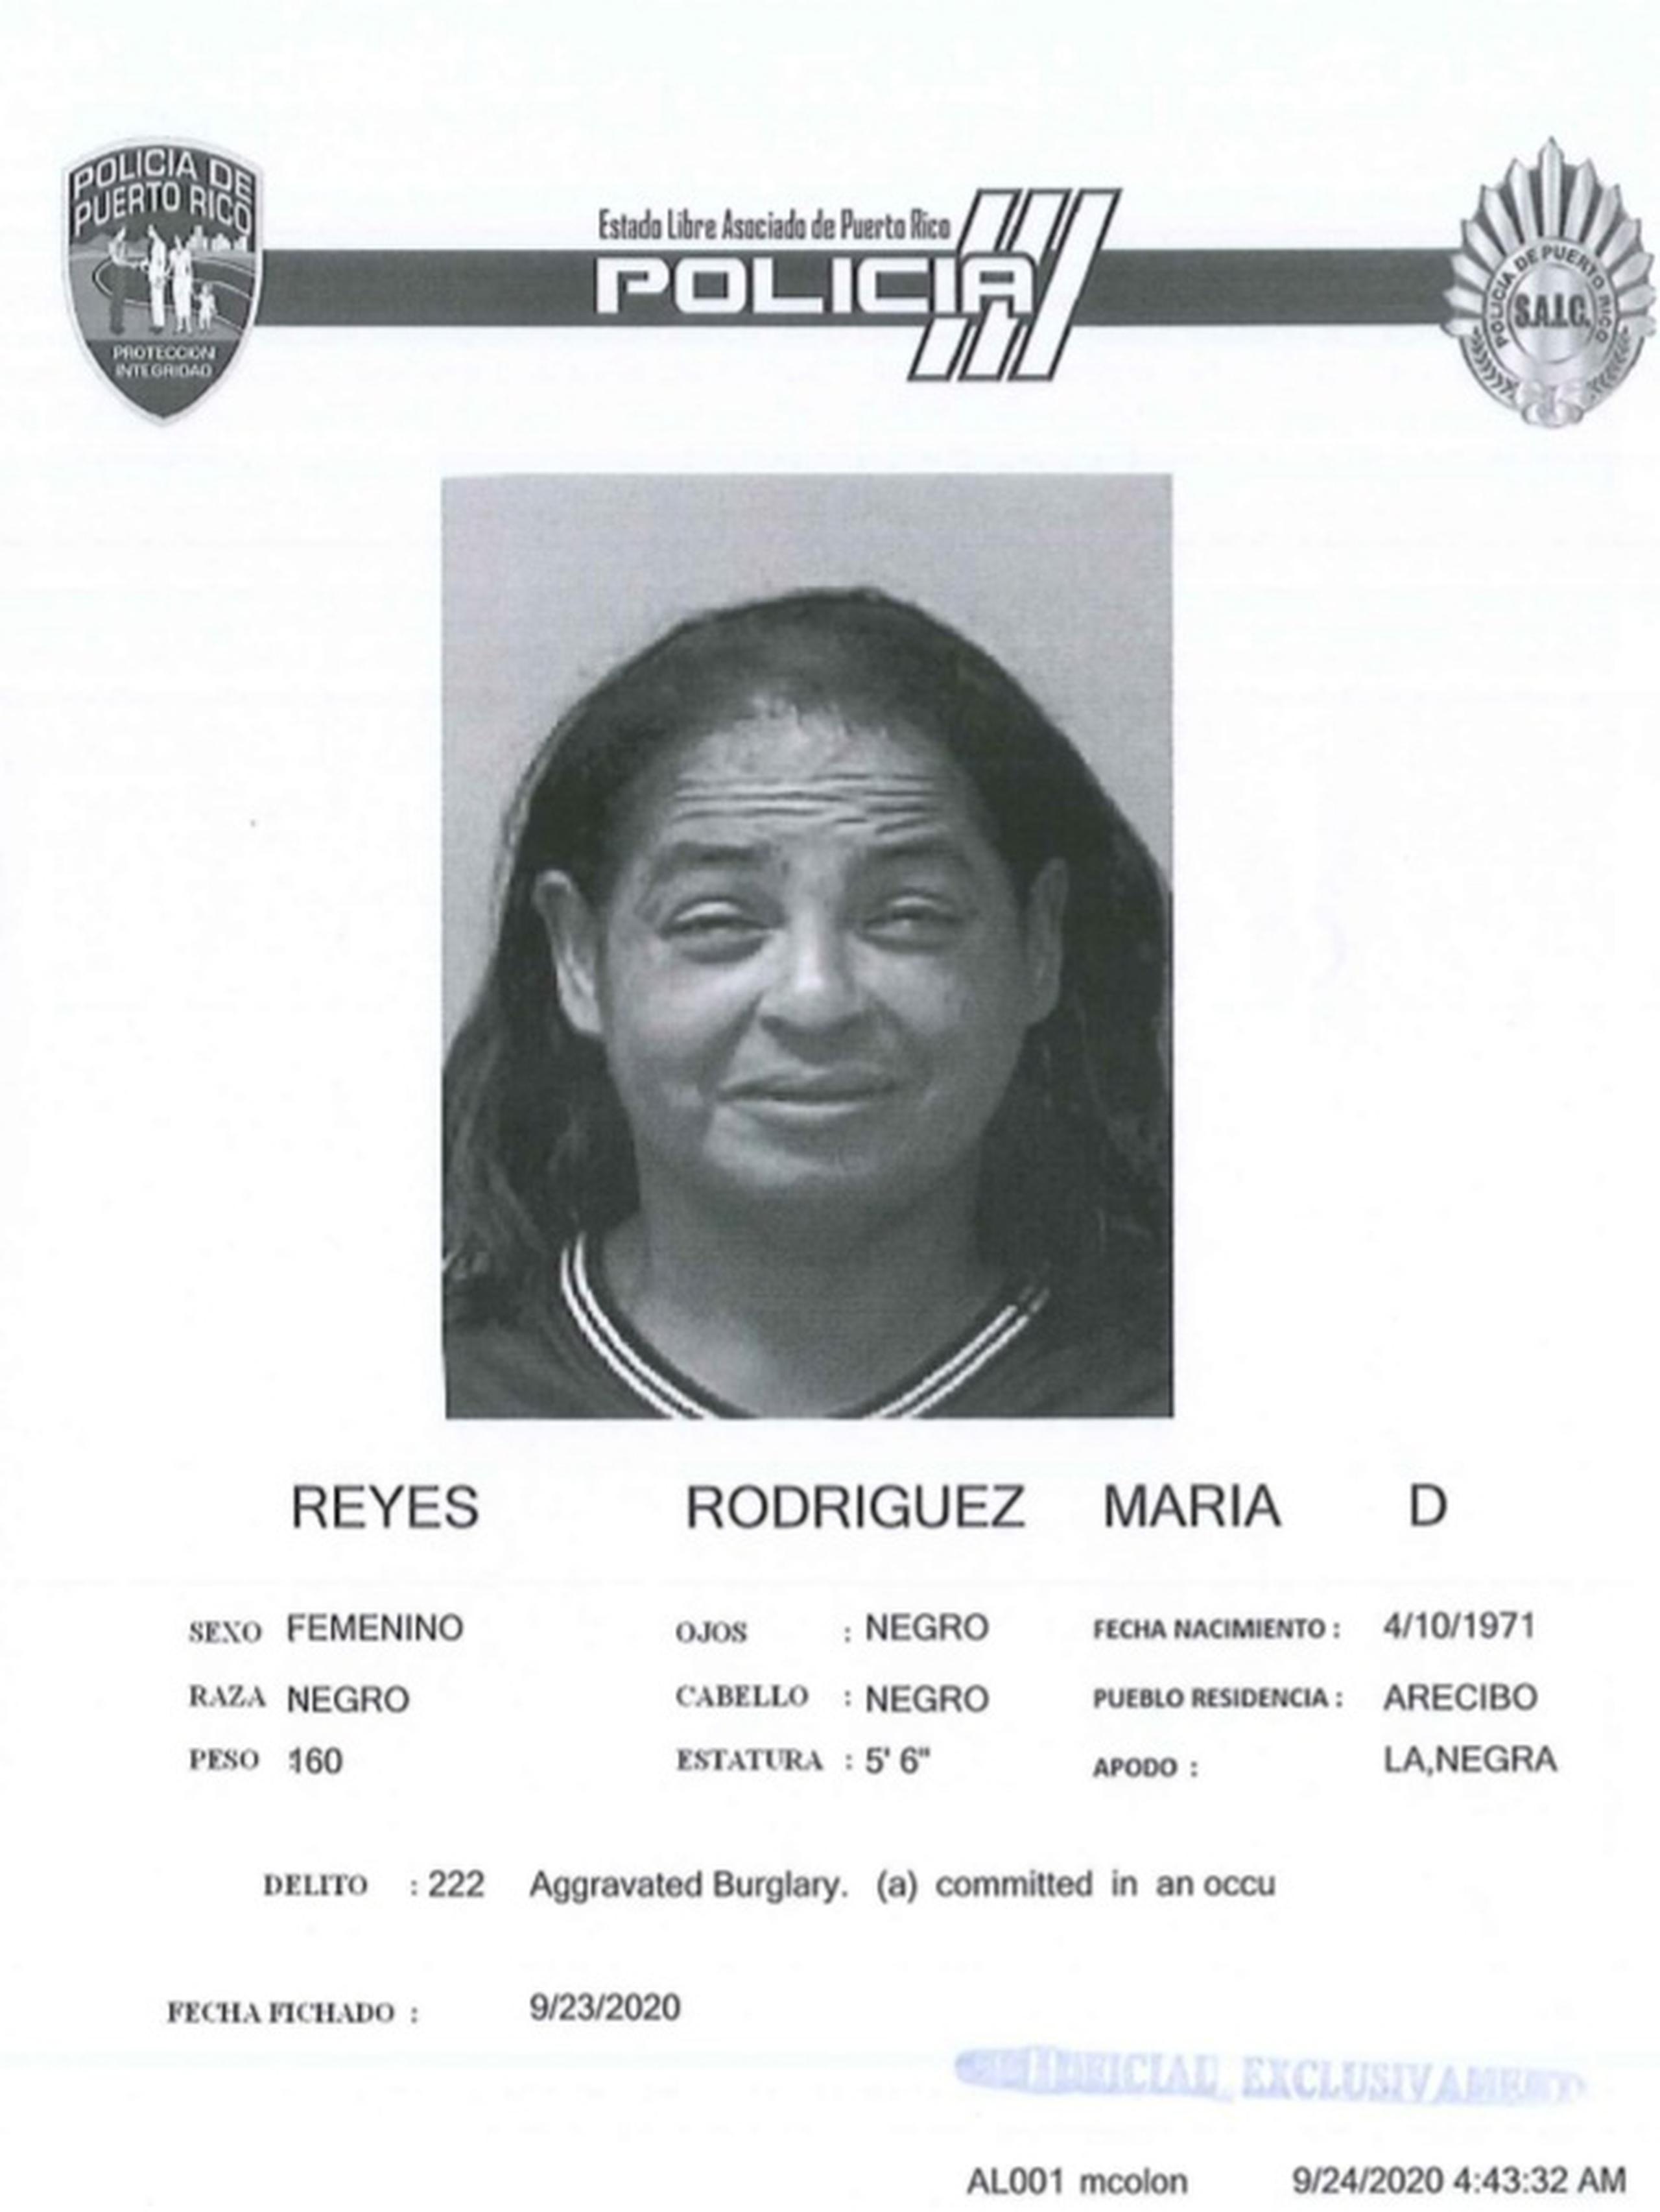 Cargos criminales por los delitos de escalamiento y apropiación ilegal fueron radicados contra María D. Reyes Rodríguez, de 49 años, vecina de Arecibo, por presuntamente robar $40 de una residencia.